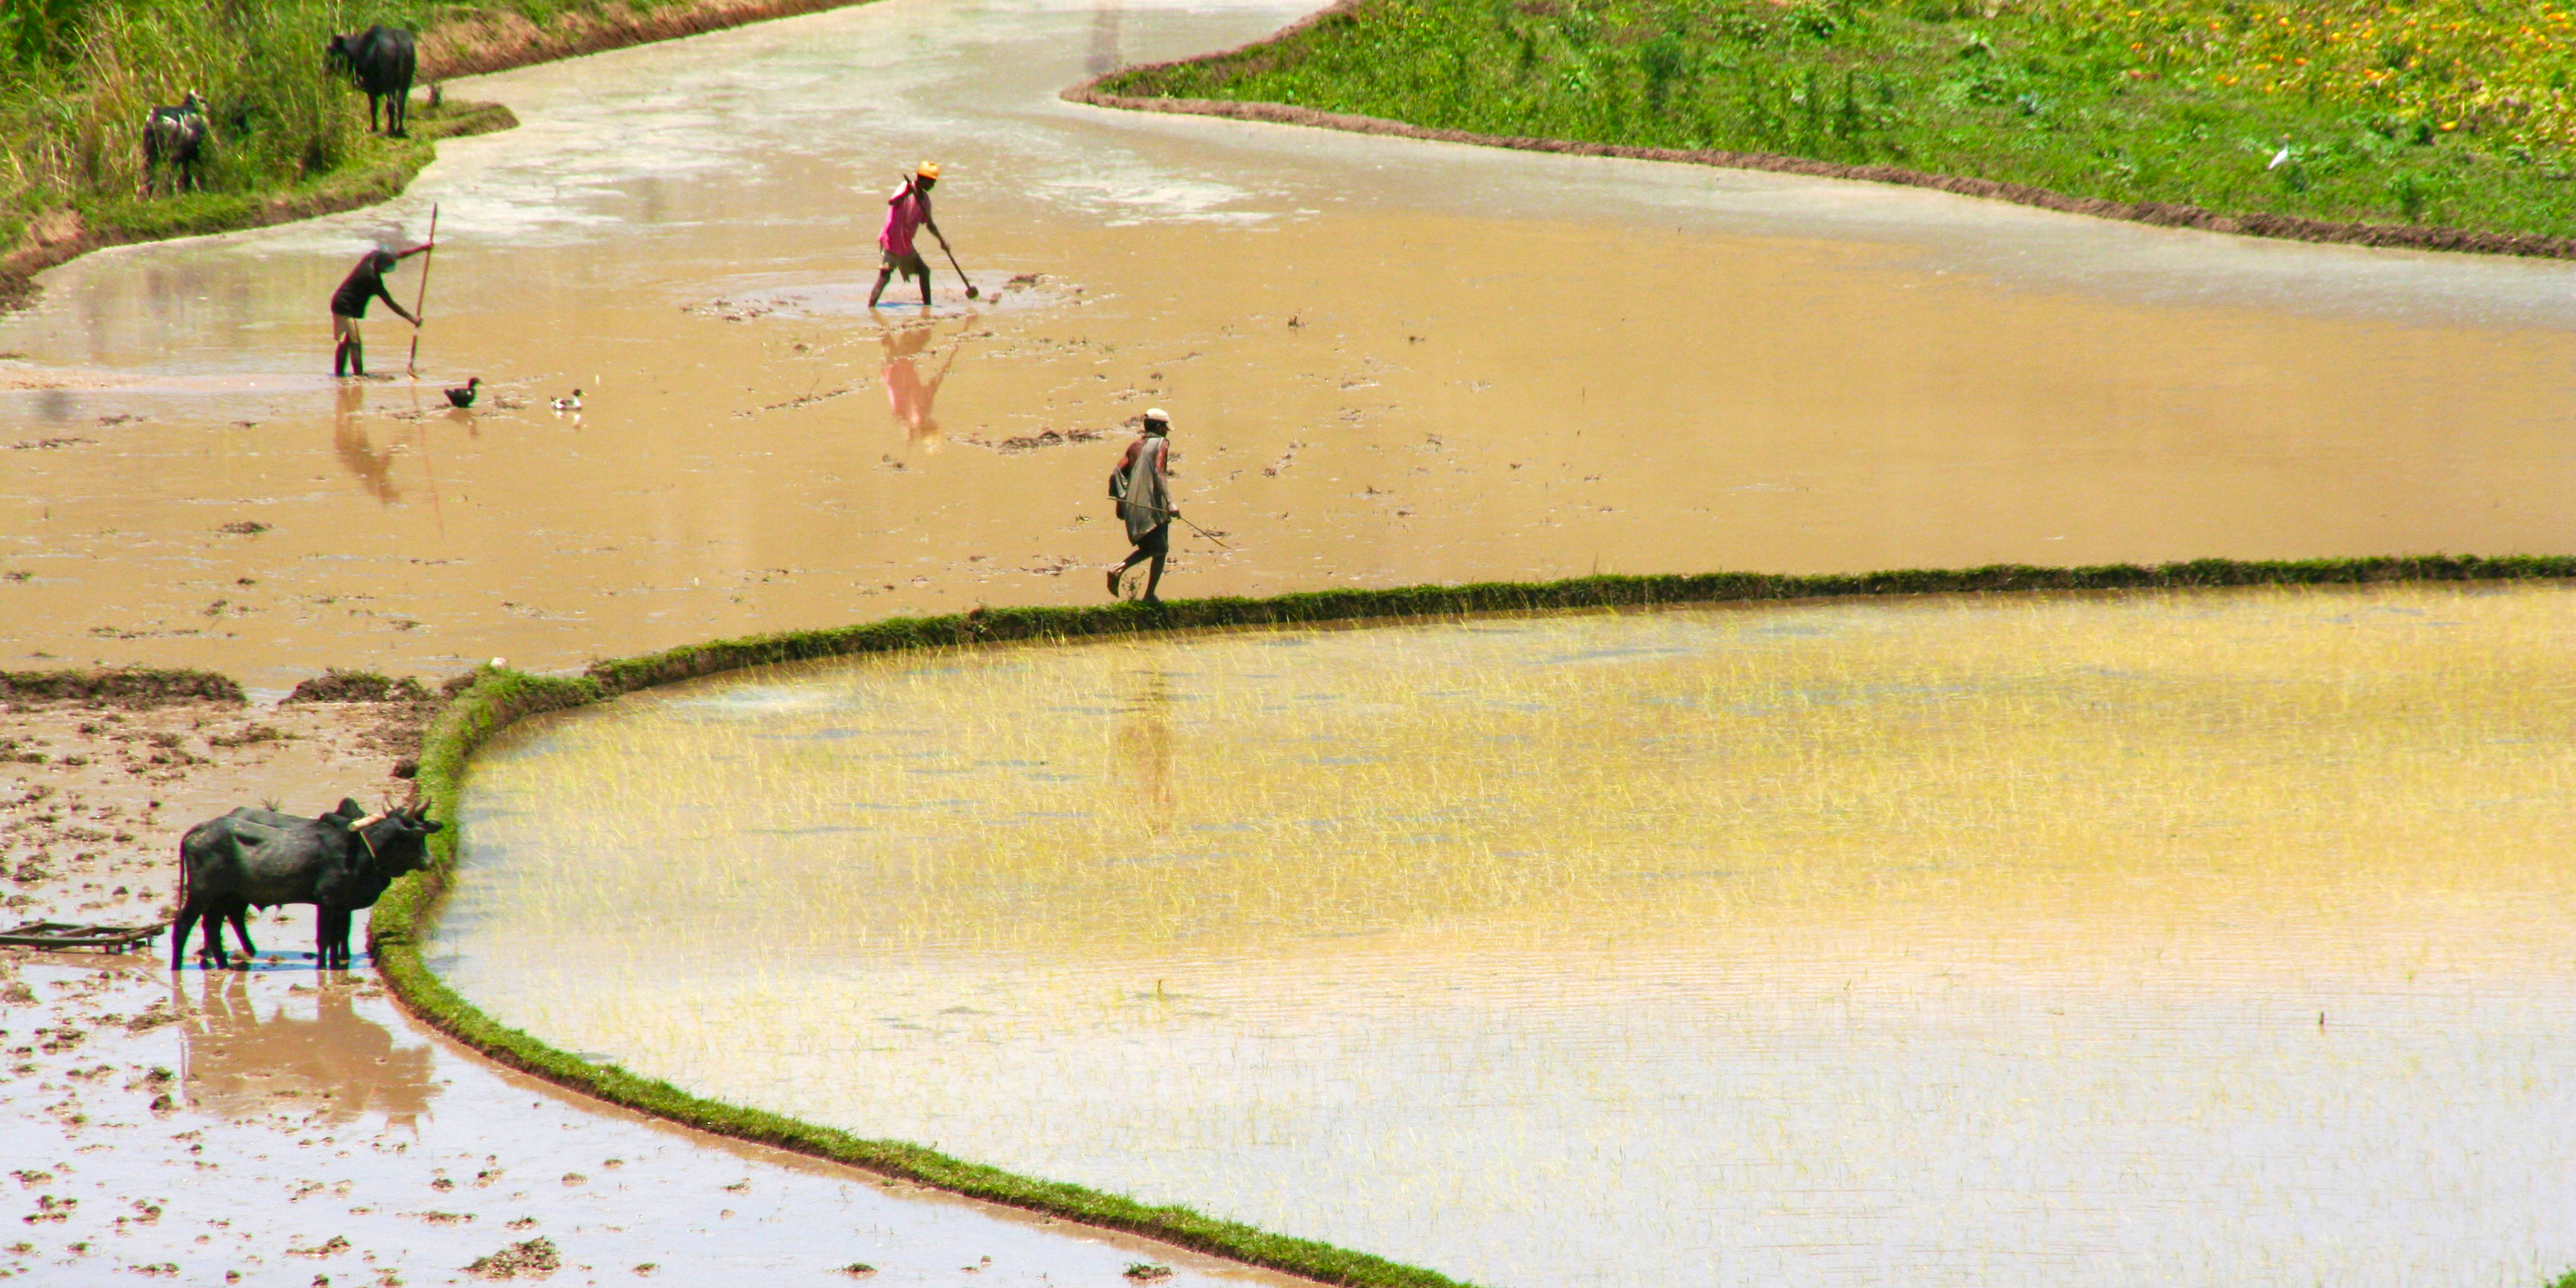 Onderweg van Sahambavy naar Fianarantsoa. 
                 De rit gaat naar Ambositra, een plaatsje gelegen tussen de rijstvelden
                 in het mooie hoogland. Het is een zeer vruchtbare streek en wordt bewoond 
                 door de Betsileo, de beste rijst - verbouwers van Madagaskar. De eerste 
                 migranten uit Zuid – Oost Azië brachten rijst mee naar Madagaskar, het 
                 Malagassische woord voor rijst is vary. Op de moerasgronden in de dalen 
                 wordt de methode van de natte rijstbouw toegepast ’horaka’ en op de 
                 hellingen gebruikt men het tavysysteem oftewel droge rijstbouw. 
                 Onder normale omstandigheden kan men twee keer per jaar oogsten met wat 
                 geluk oogsten ze soms drie keer per jaar. Ook staat Ambositra bekend om 
                 z’n houtsnijwerk wat vanuit de omliggende dorpen wordt aangevoerd. 
                 Na de lunch vertrek je naar Sahambavy, een plaatsje gelegen tussen de theeplantages 
                 gelegen aan de spoorlijn die de stad Fianarantsoa verbindt met de stad Manakara.
                 